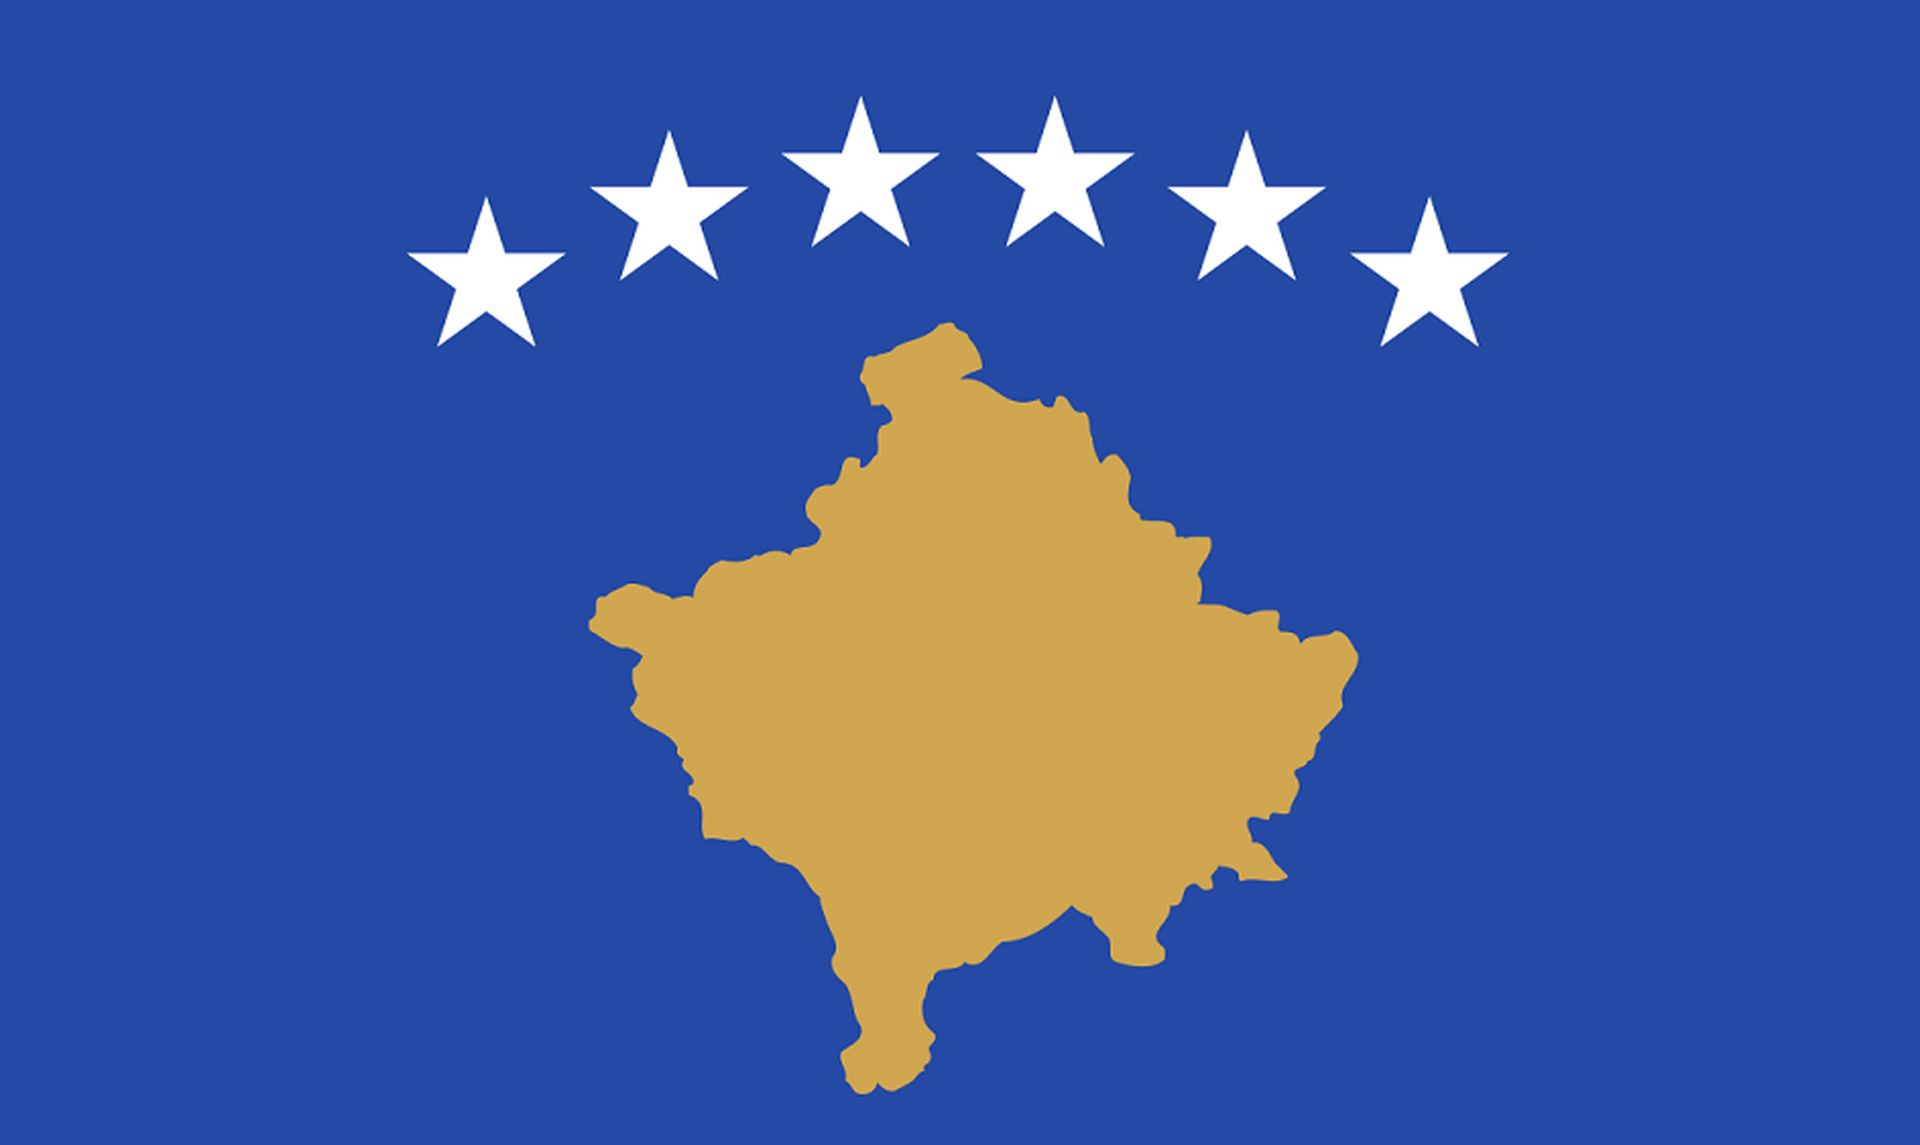 Po dwunastu godzinach zakończyły się rozmowy przywódców Serbii i Kosowa w macedońskiej Ochrydzie w sprawie europejskiej propozycji unormowania stosunków między oboma krajami. Według przedstawiciela Unii Europejskiej osiągnięto porozumienie.